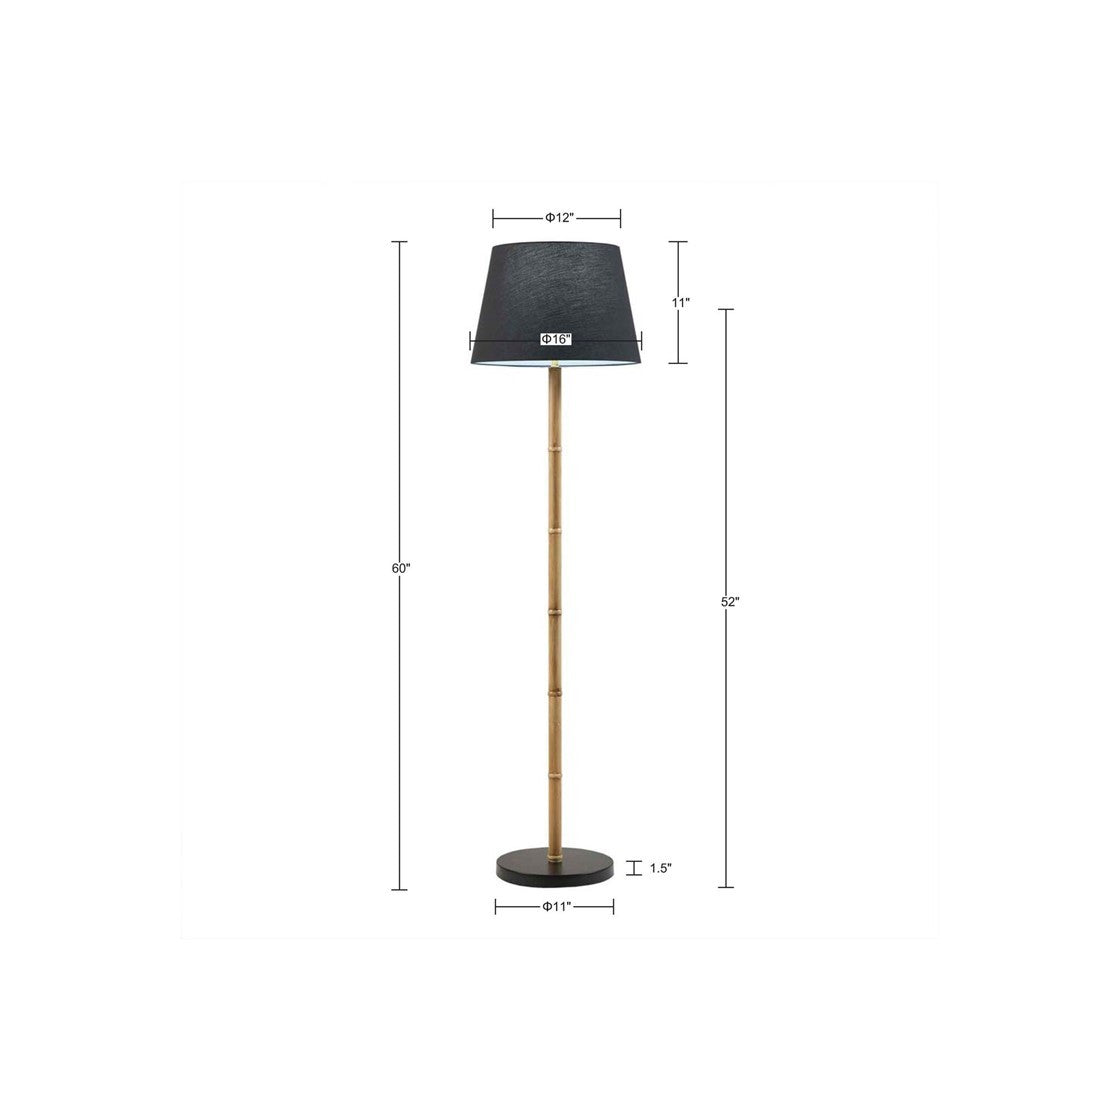 Metal Bamboo Floor Lamp 60"h